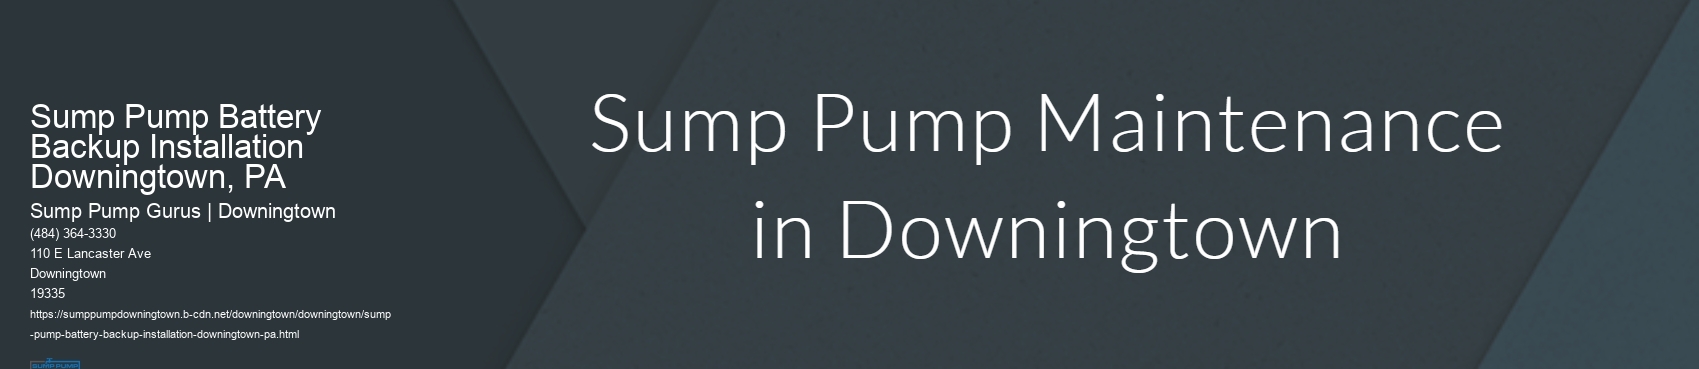 Sump Pump Battery Backup Installation Downingtown, PA